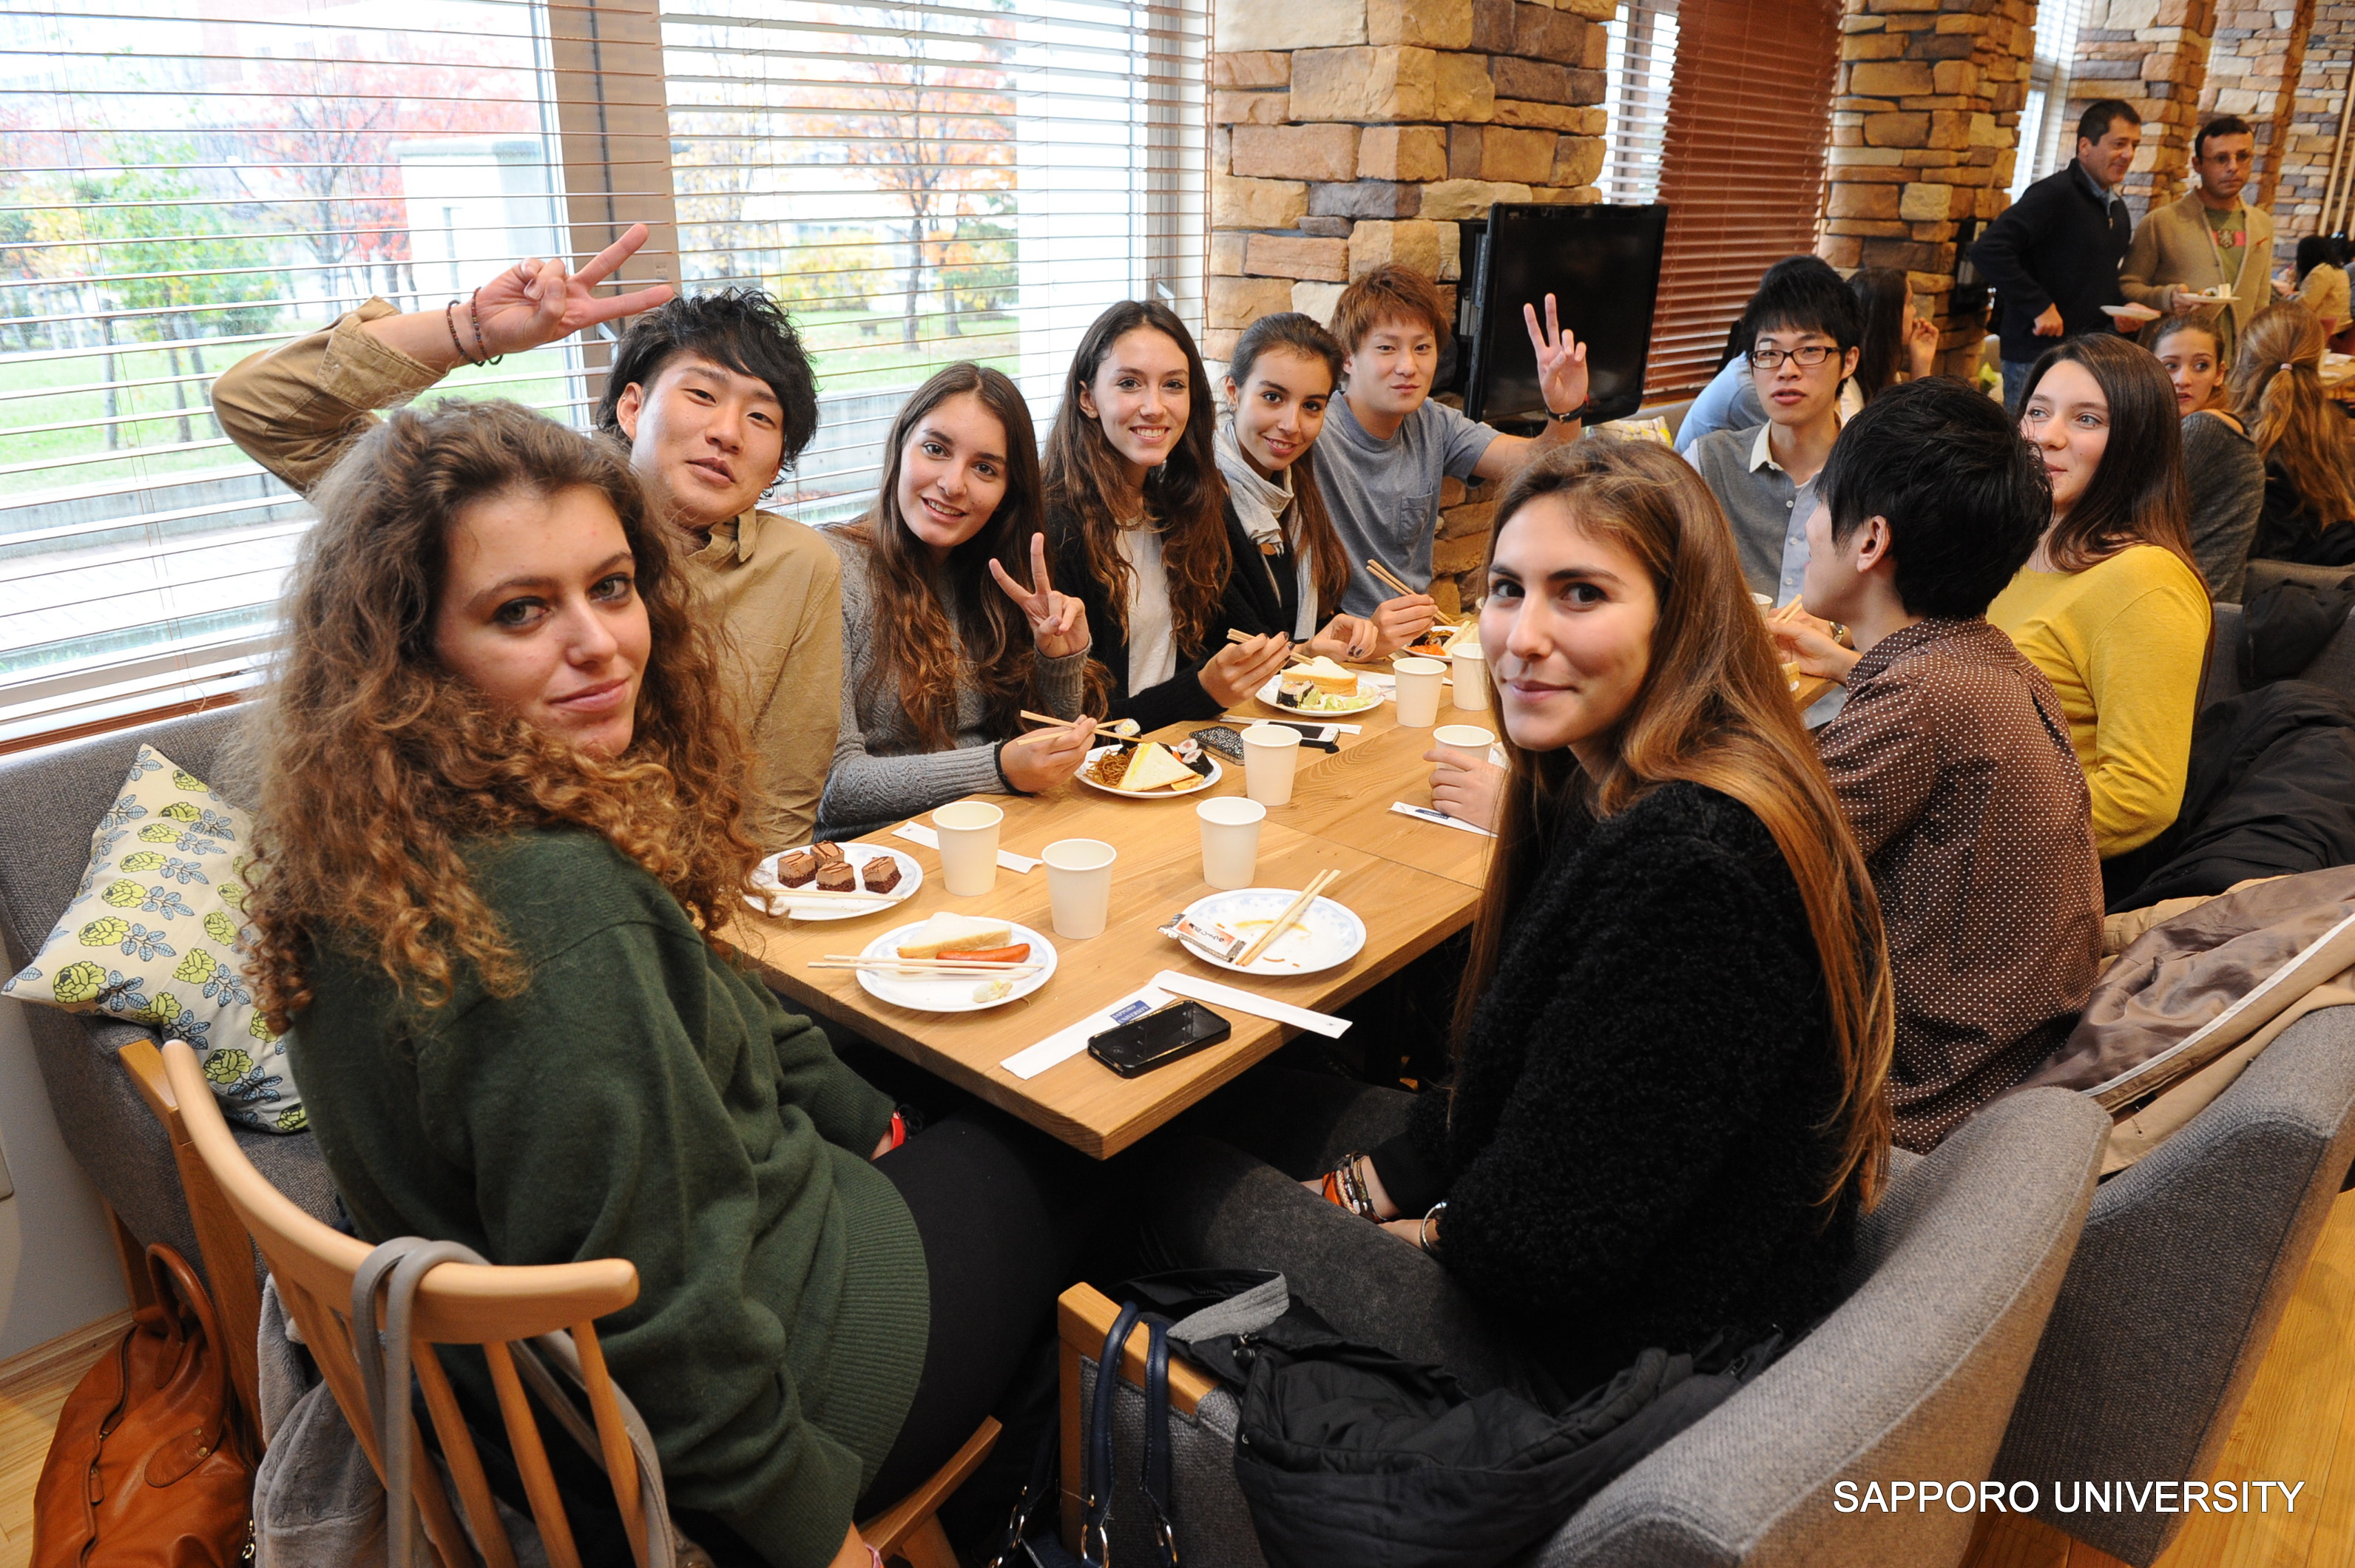 ルクレーツィオ カーロ高校 イタリア の学生が来学しました 最新情報 札幌大学 札幌大学女子短期大学部 サツダイマッチング